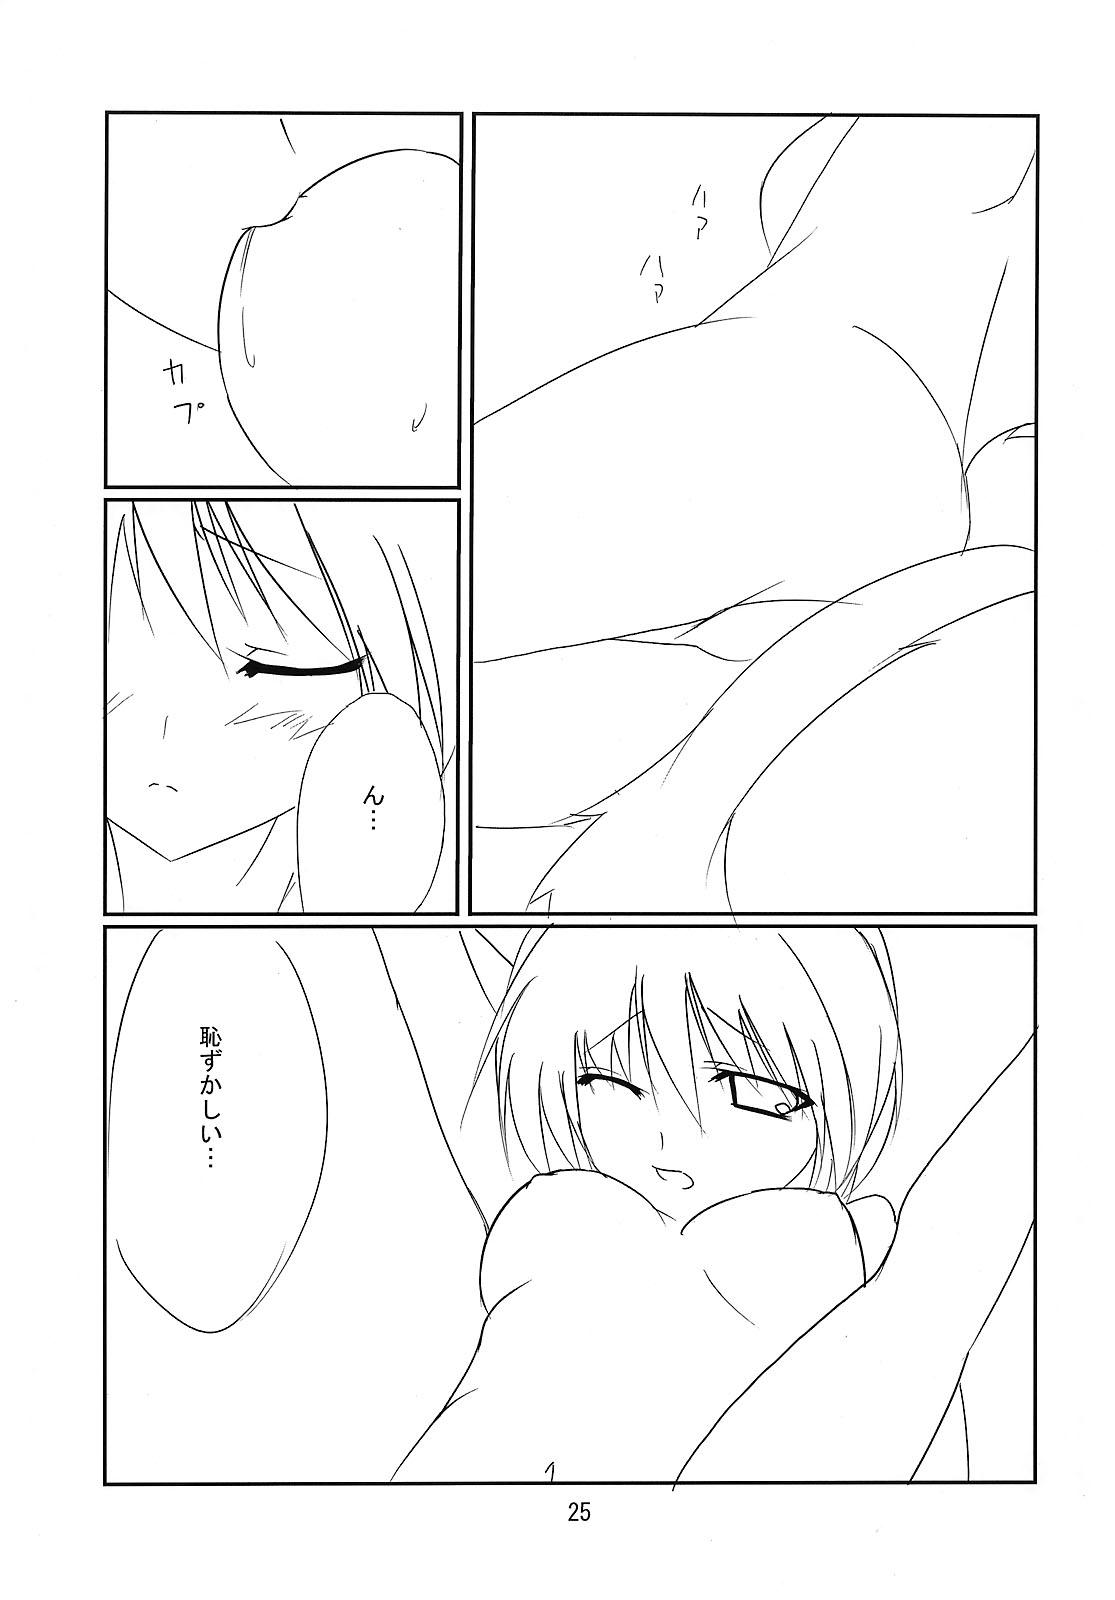 RAN × Yukari AND Alice × Marisa 23